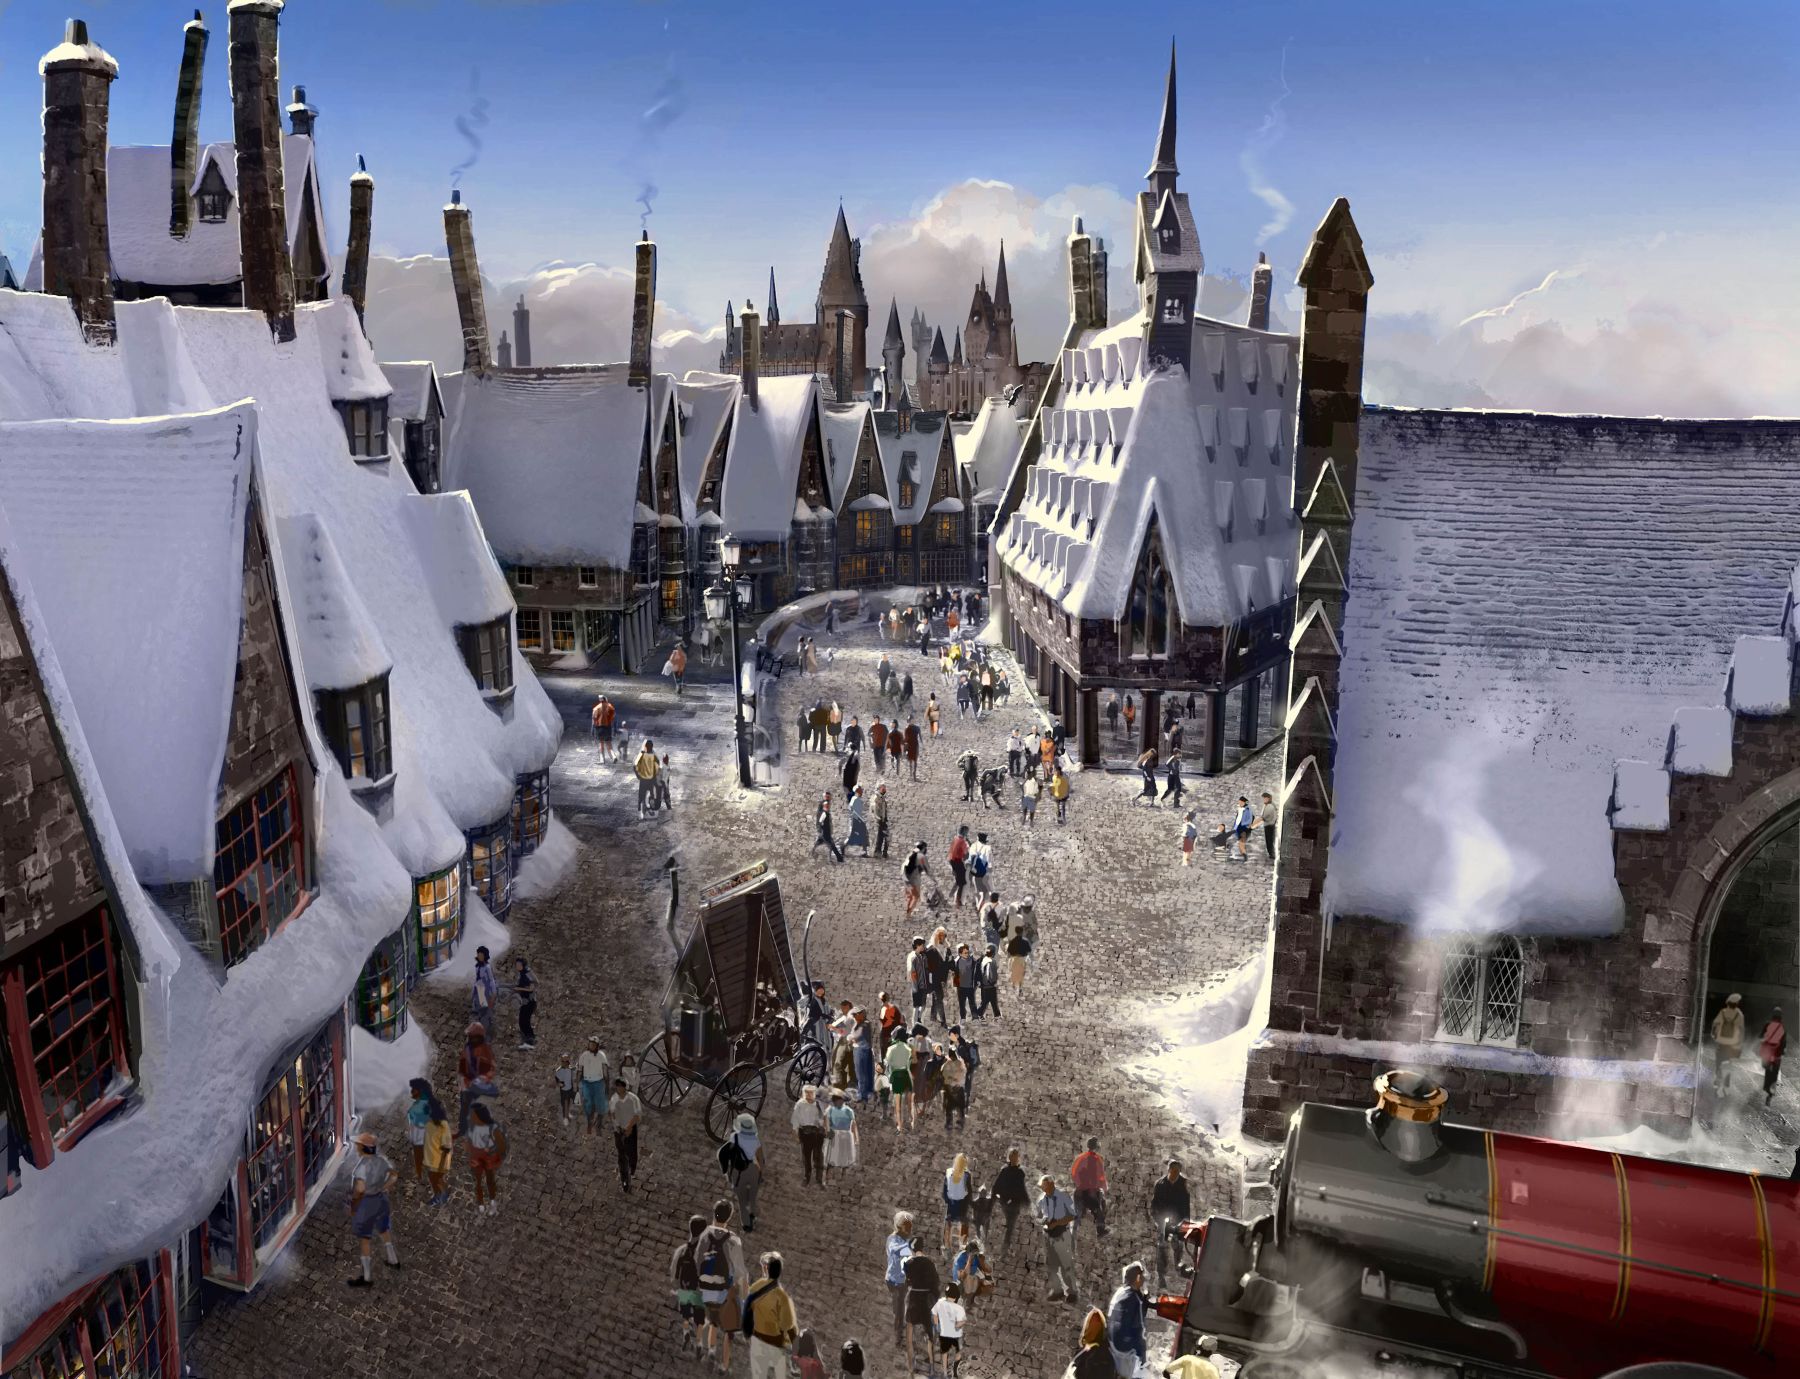 ハリー ポッターのテーマパーク ハリー ポッターの魔法の世界 が6月18日にオープン ハリー ポッターと禁じられた旅 も登場 Gigazine